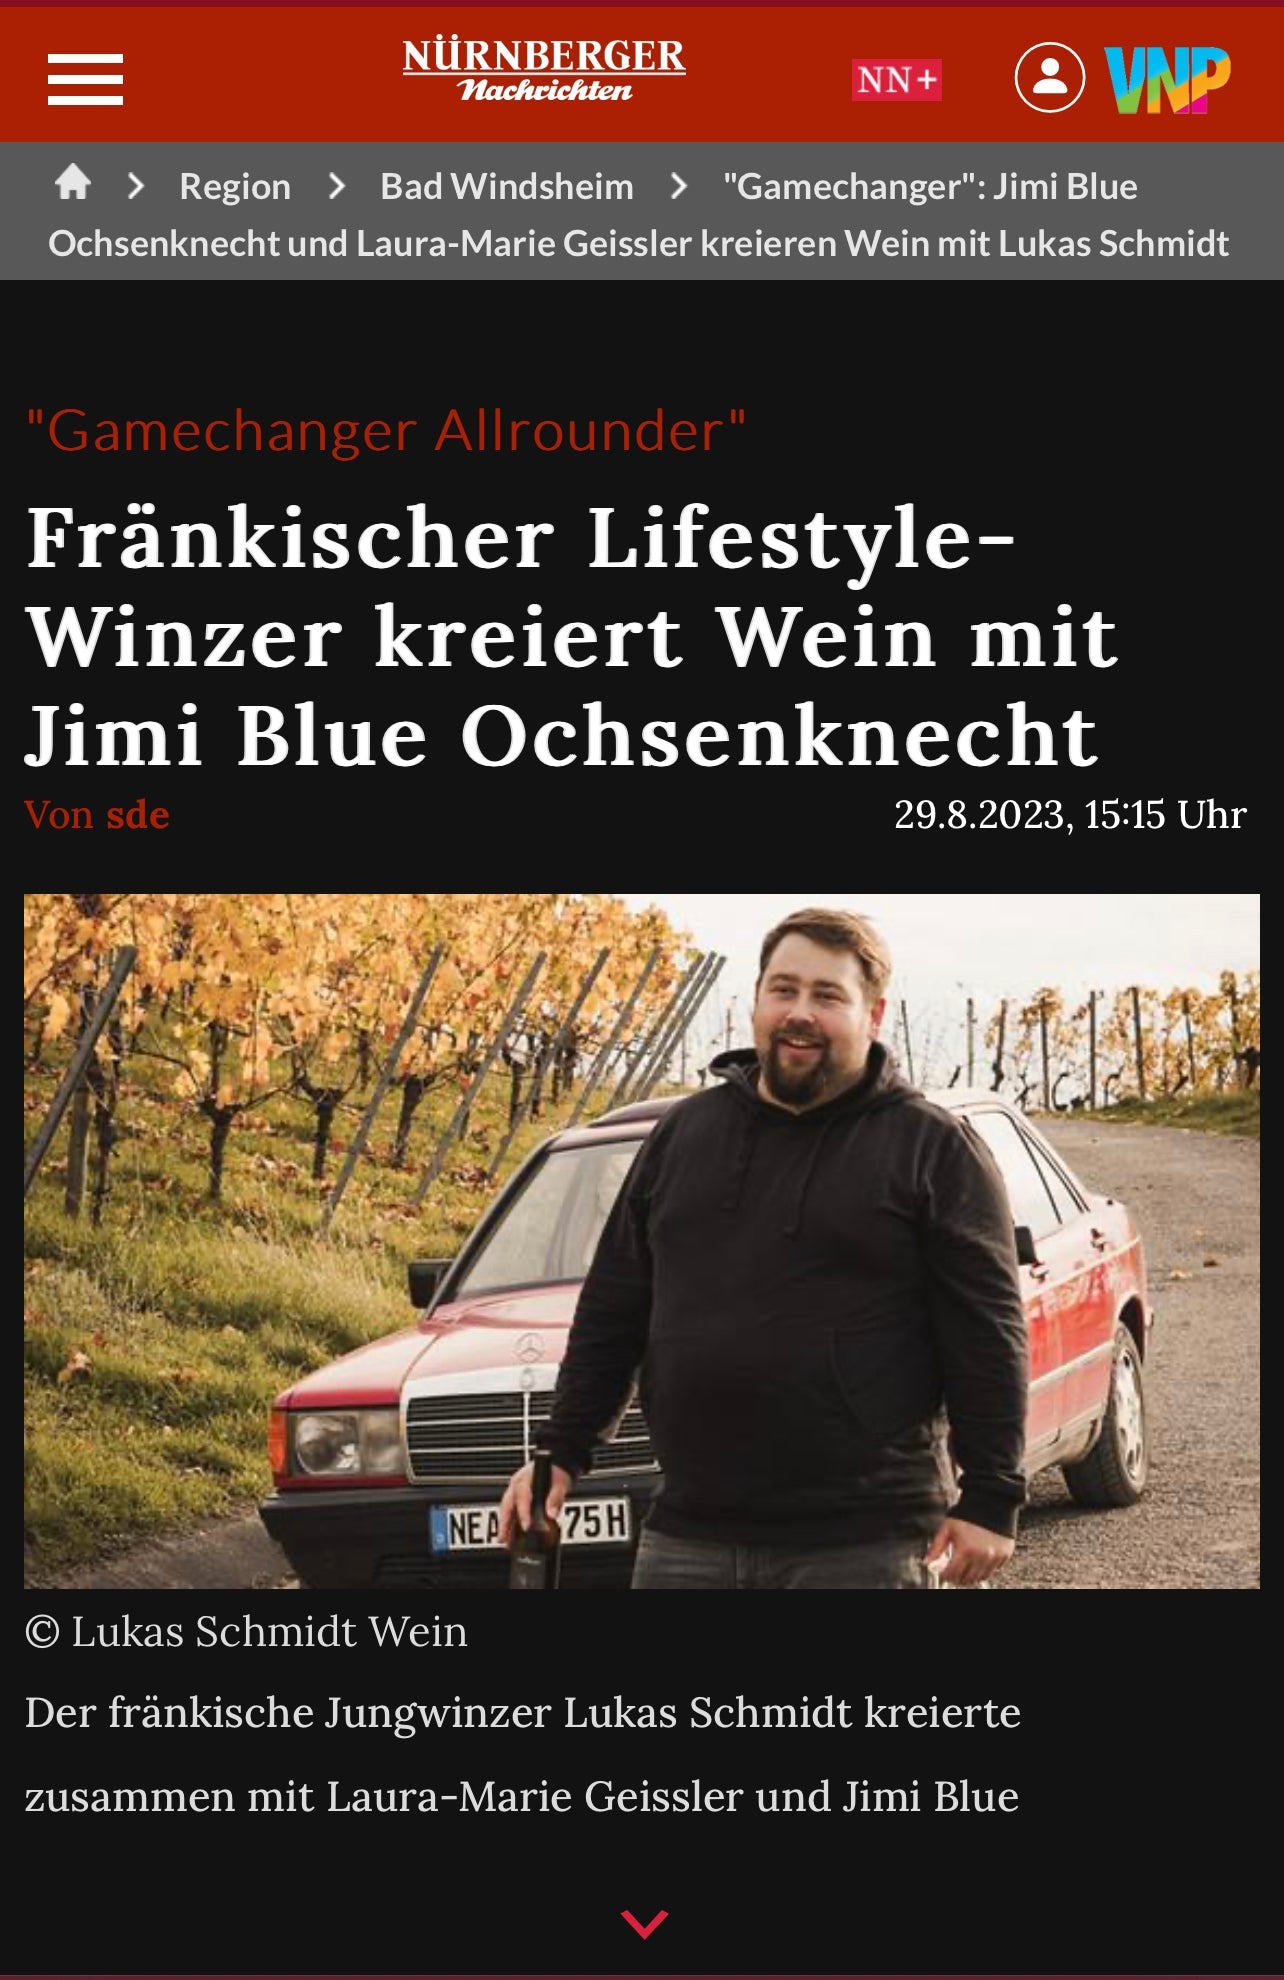 "Fränkischer Lifestyle-Winzer kreiert Wein mit Jimi Blue Ochsenknecht" - Nürnberger Nachrichten vom 29.08.2023 - Lukas Schmidt Wein